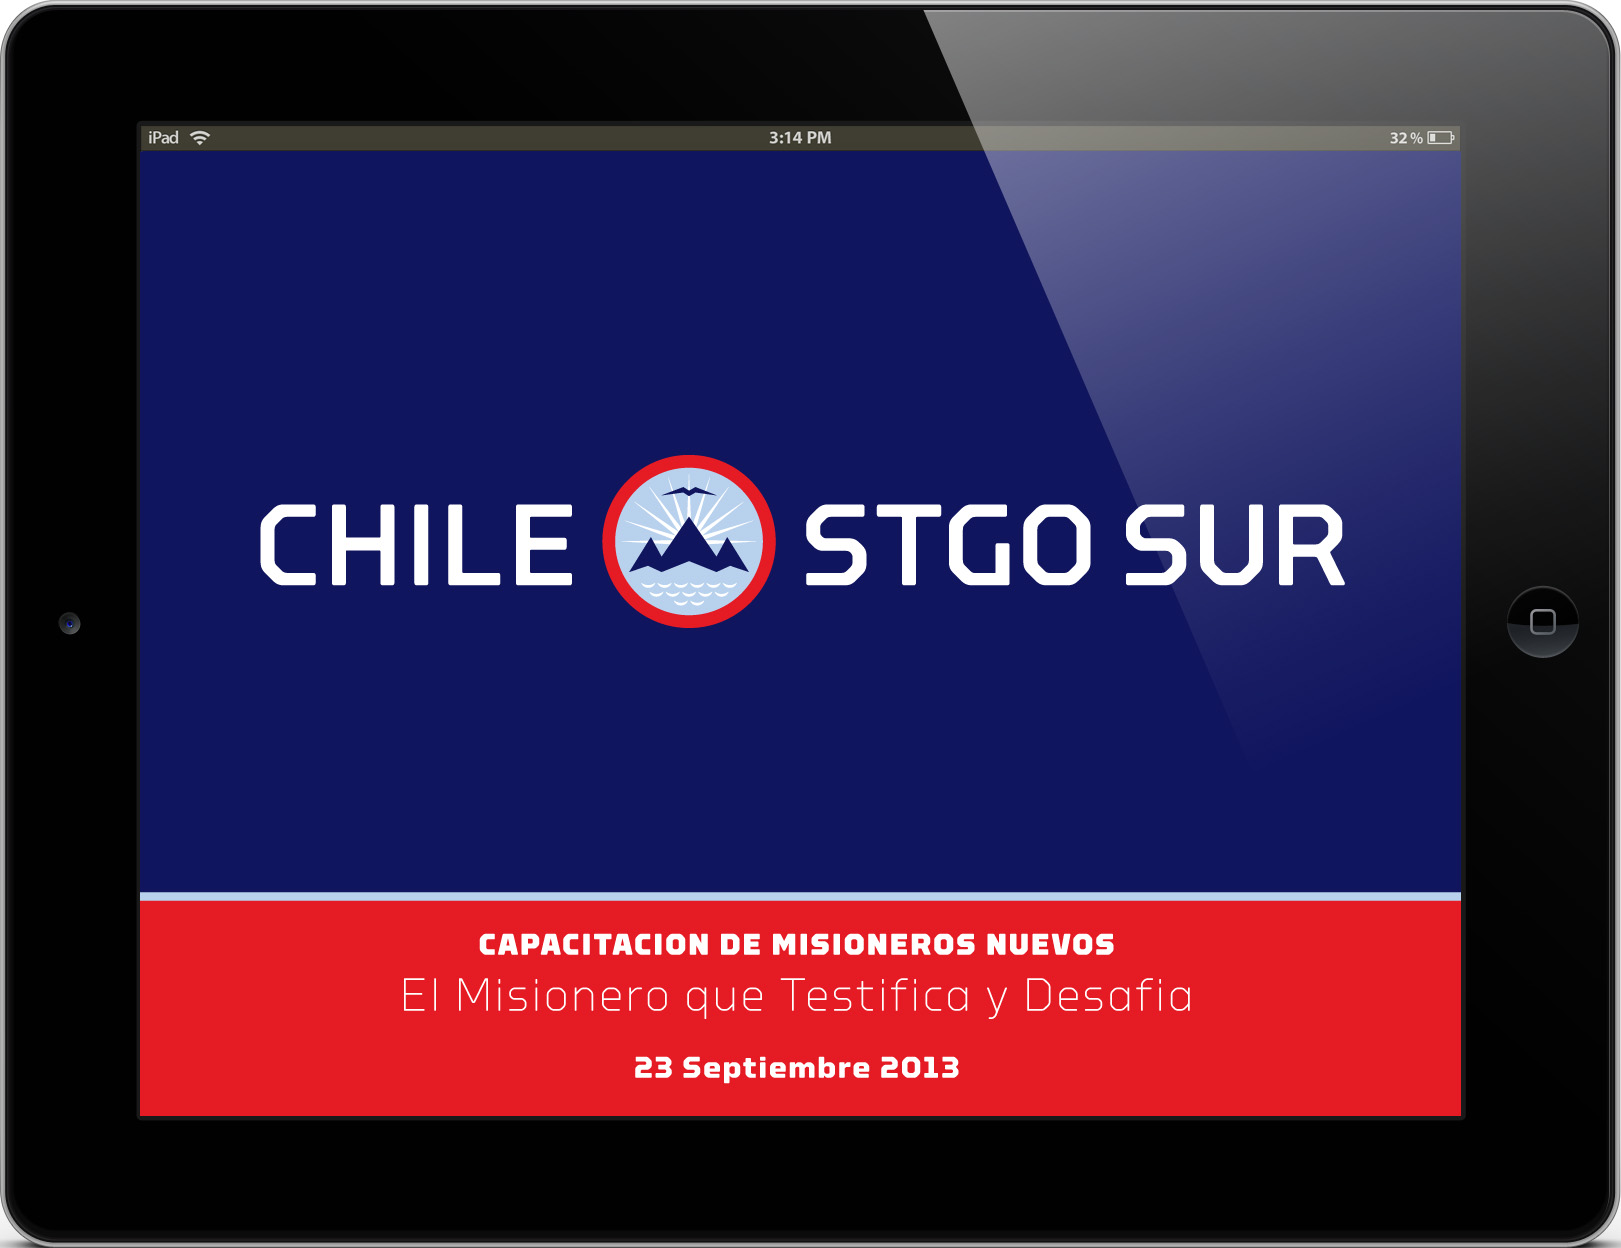 iPad Chile Stgo Sur New Logo and Identity by Brett Traylor